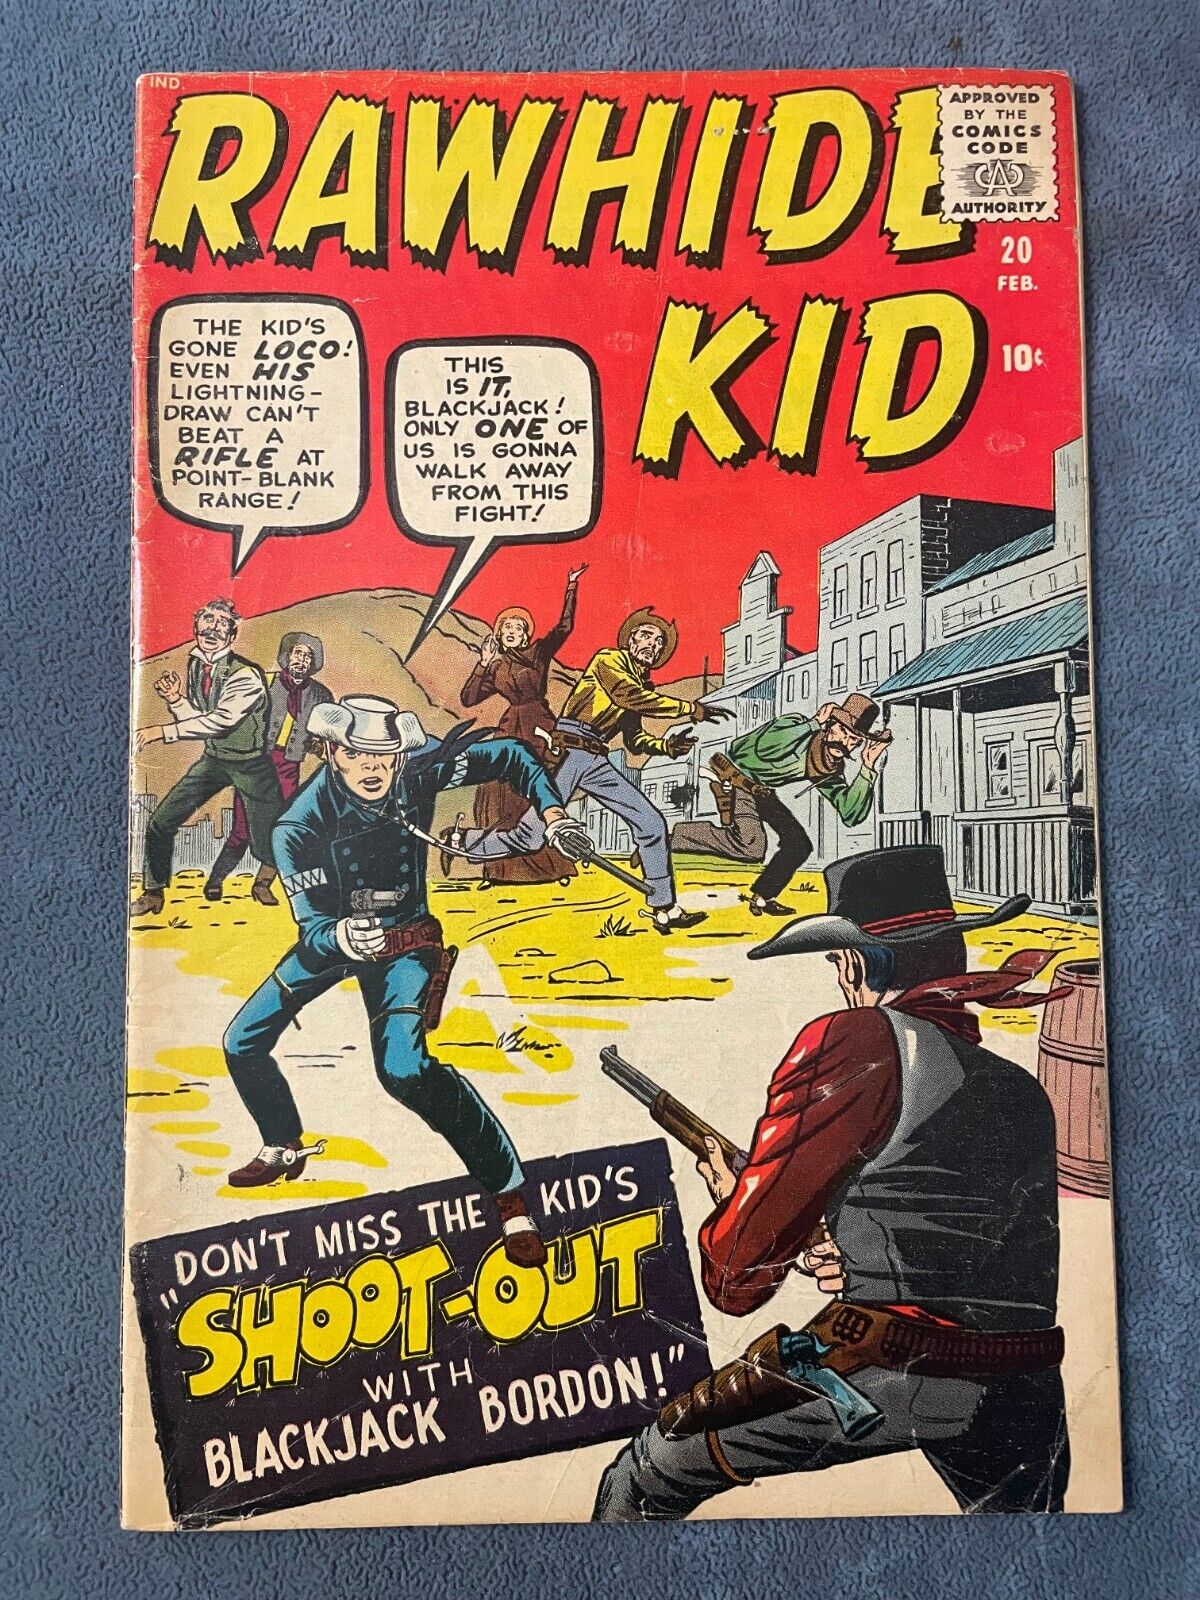 Rawhide Kid #20 1961 Atlas Marvel Comic Book Western Jack Kirby Cover VG+